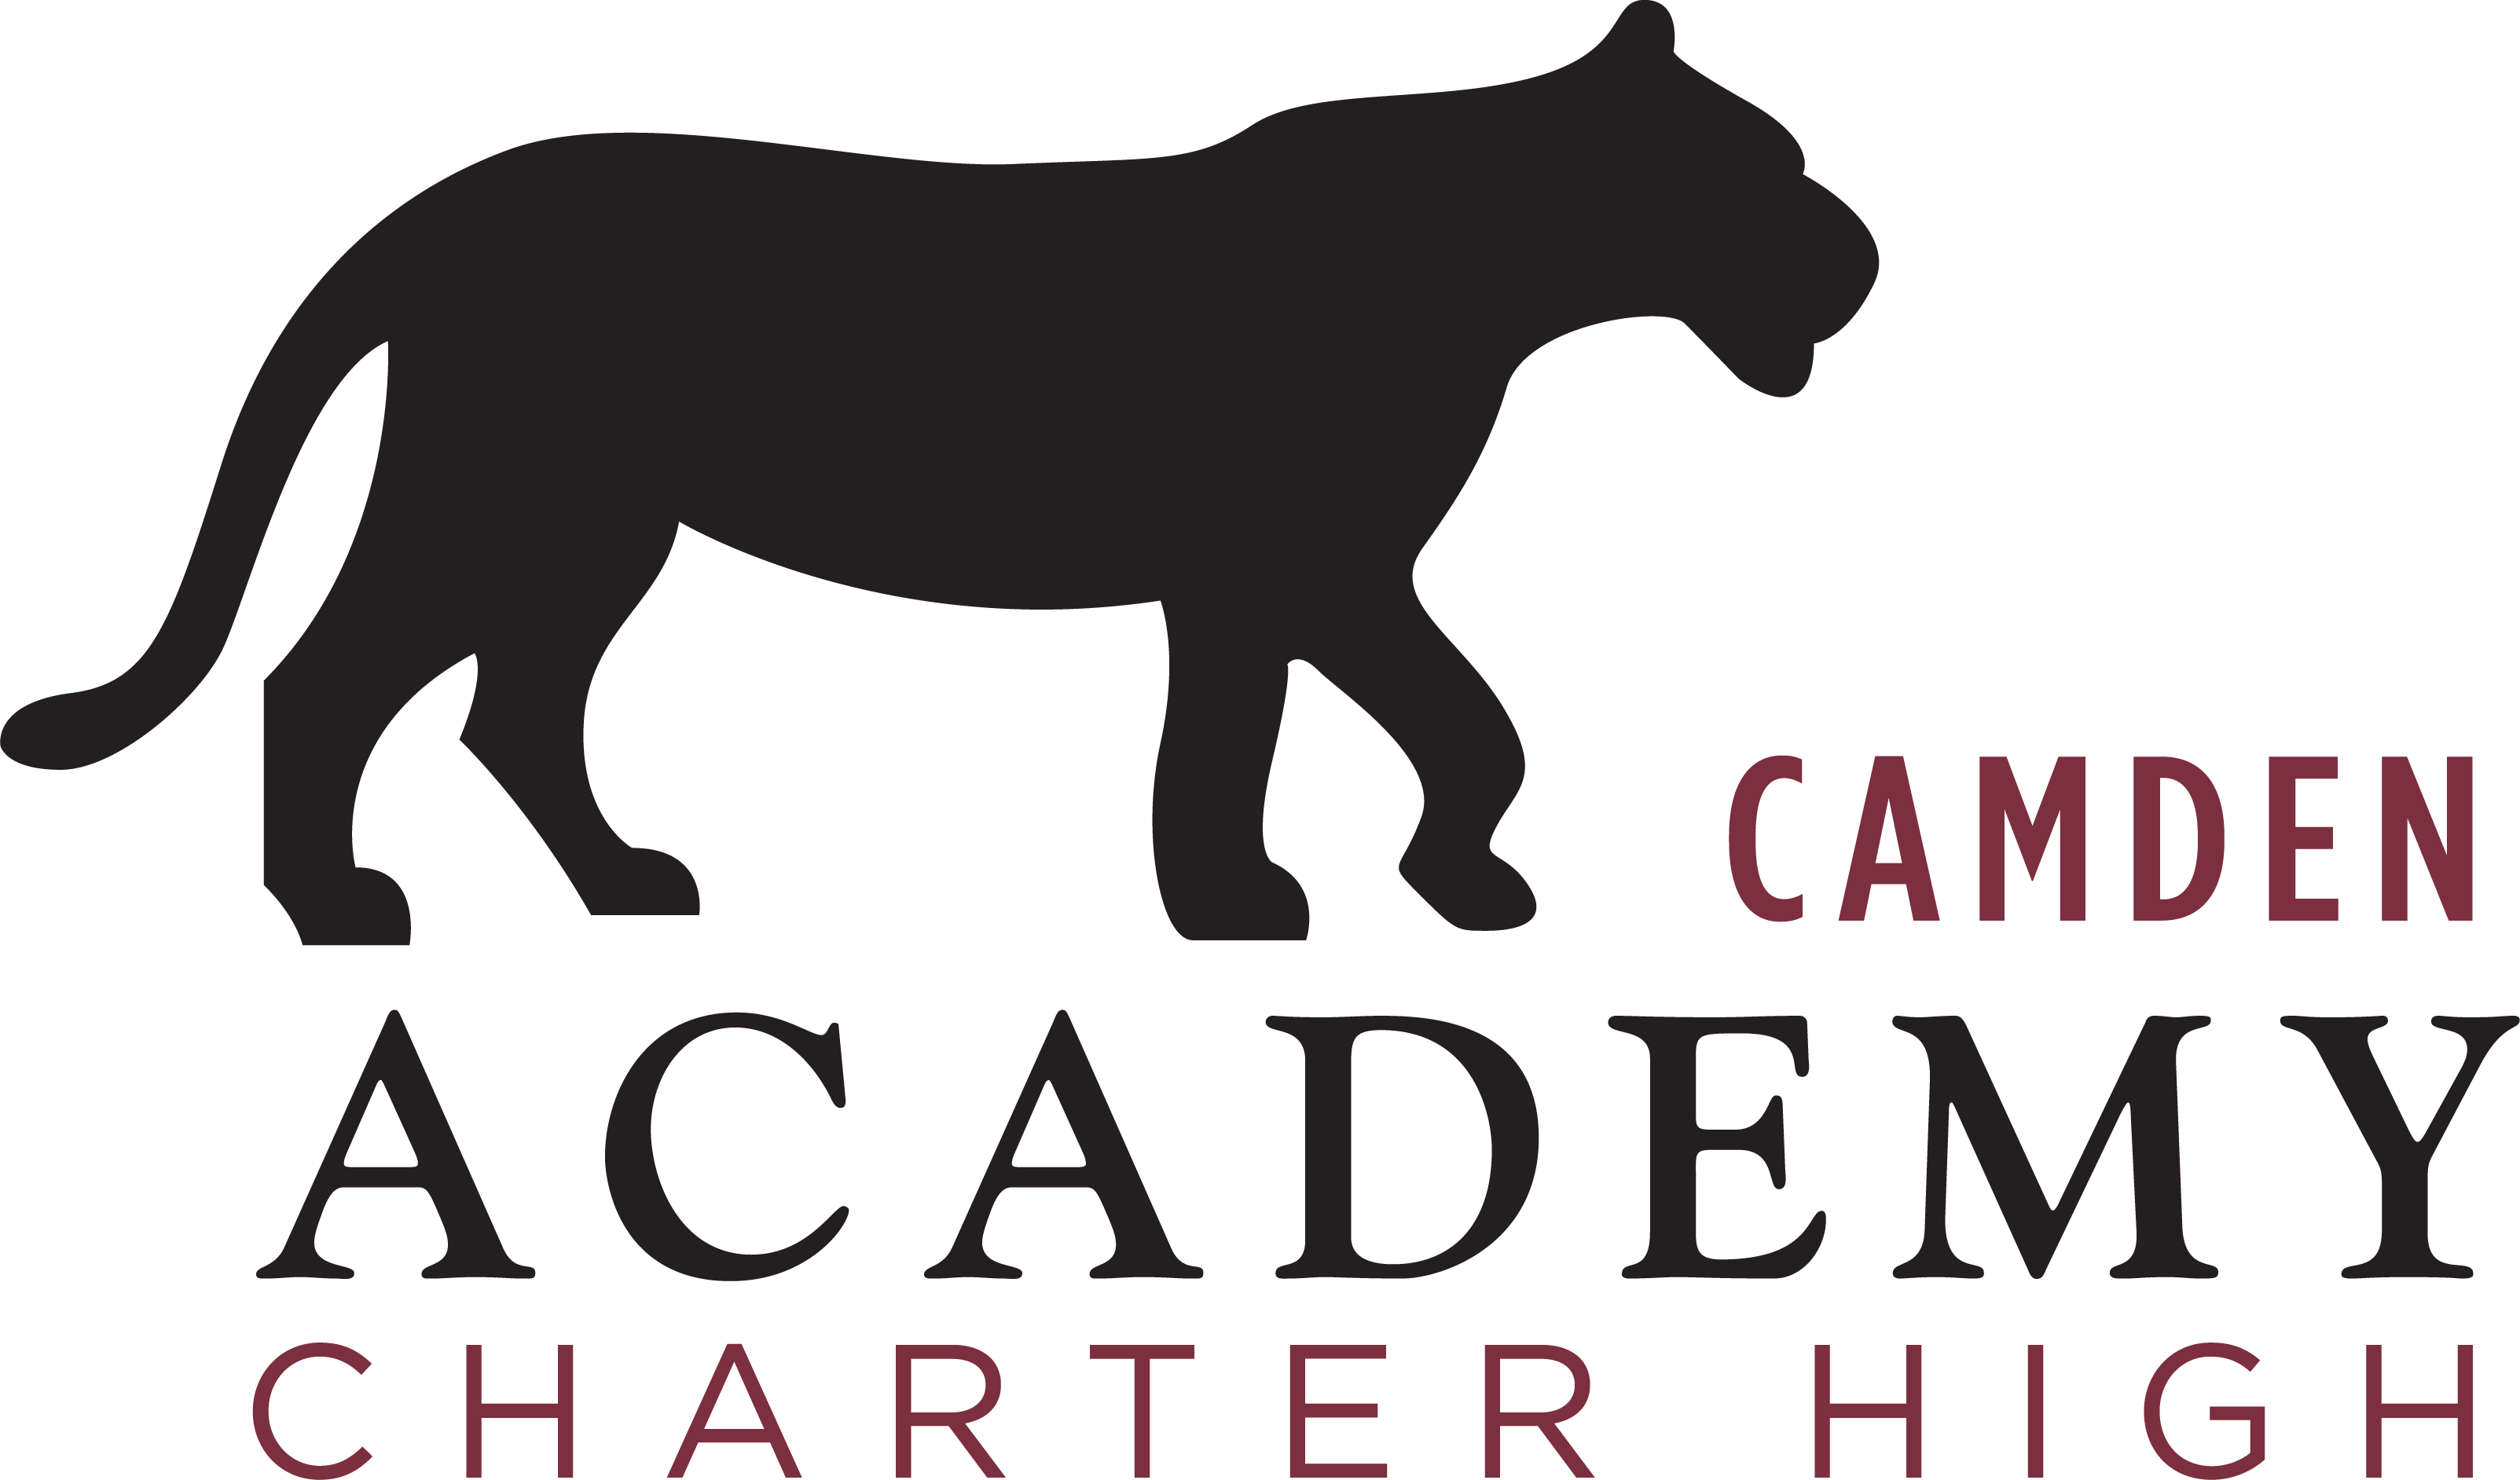 Camden Academy Charter High School